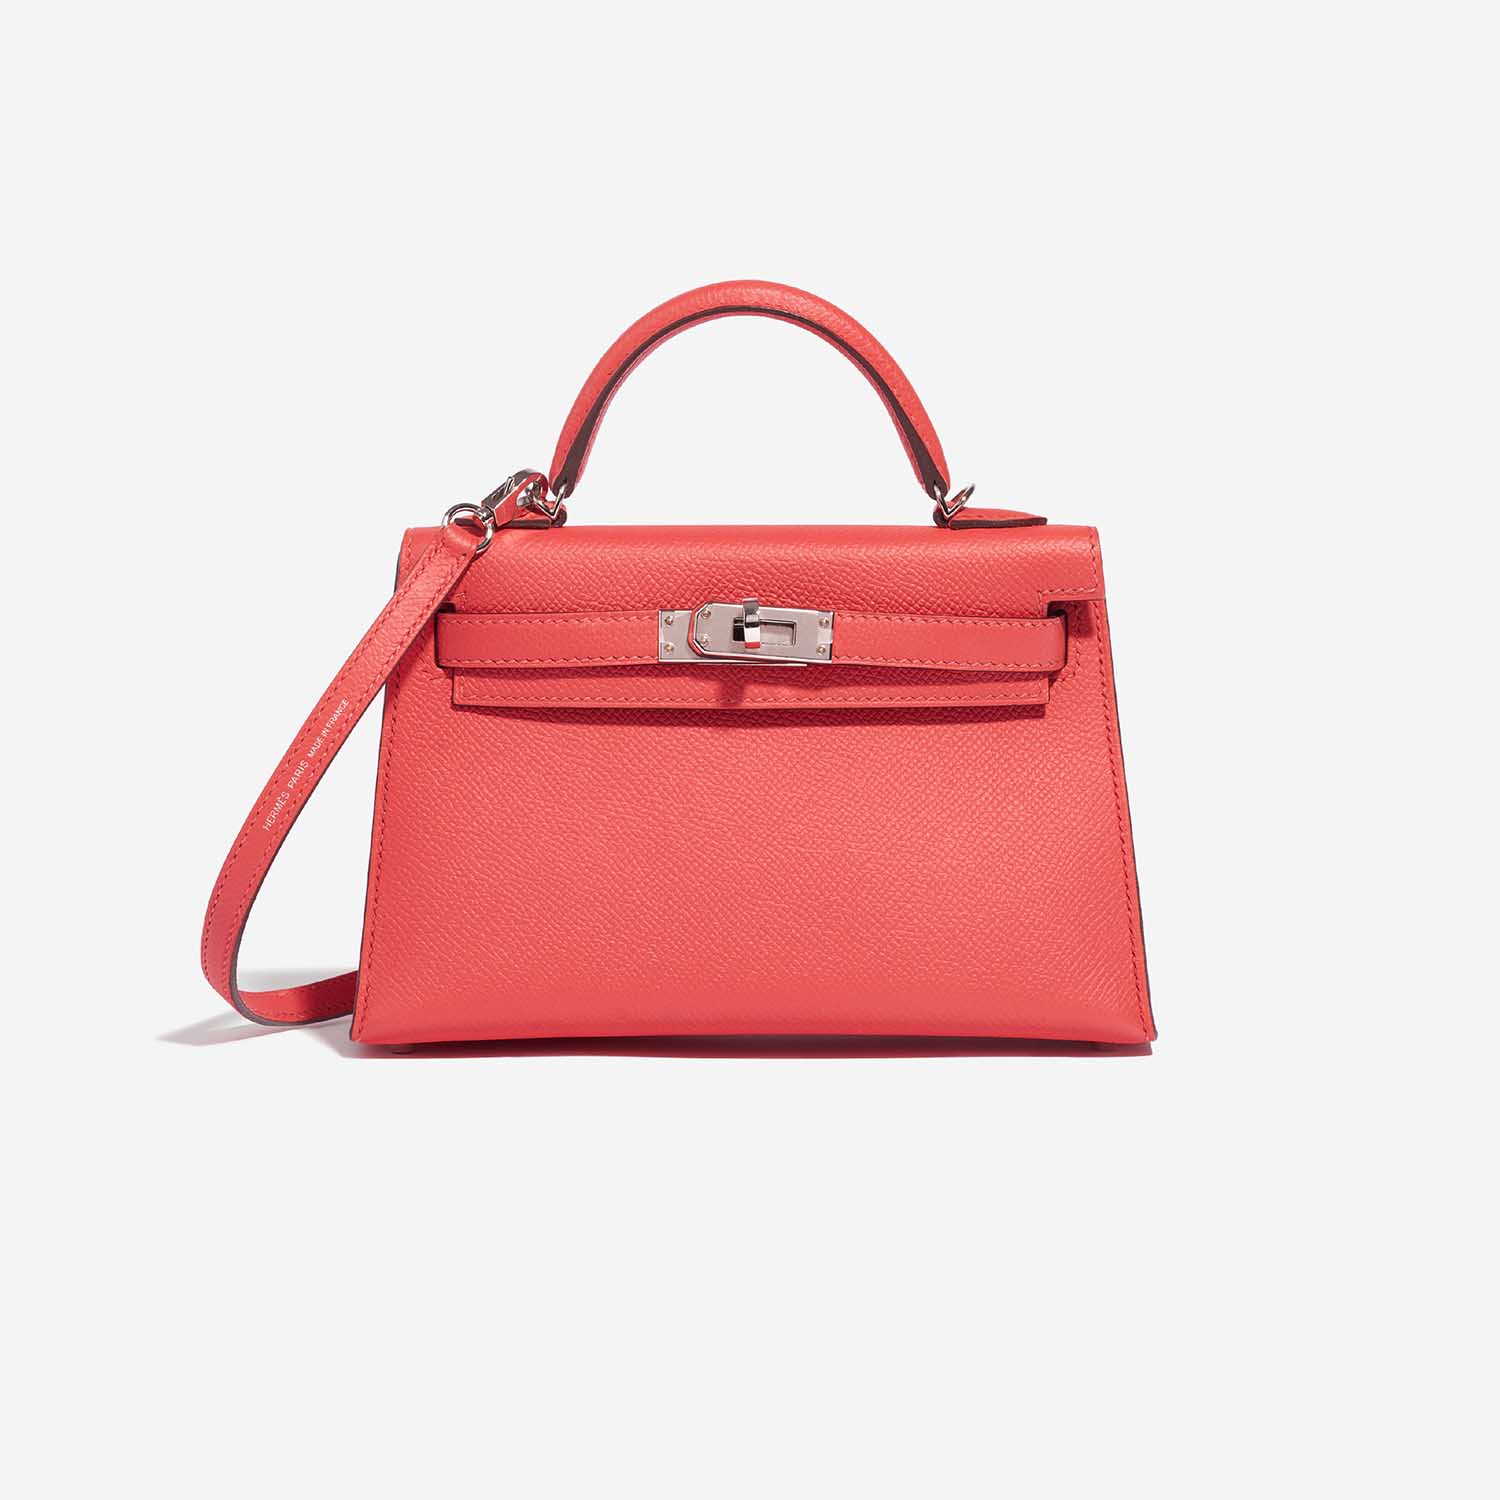 Hermès Kelly Mini RoseJaipur-RougeVif Front | Verkaufen Sie Ihre Designer-Tasche auf Saclab.com